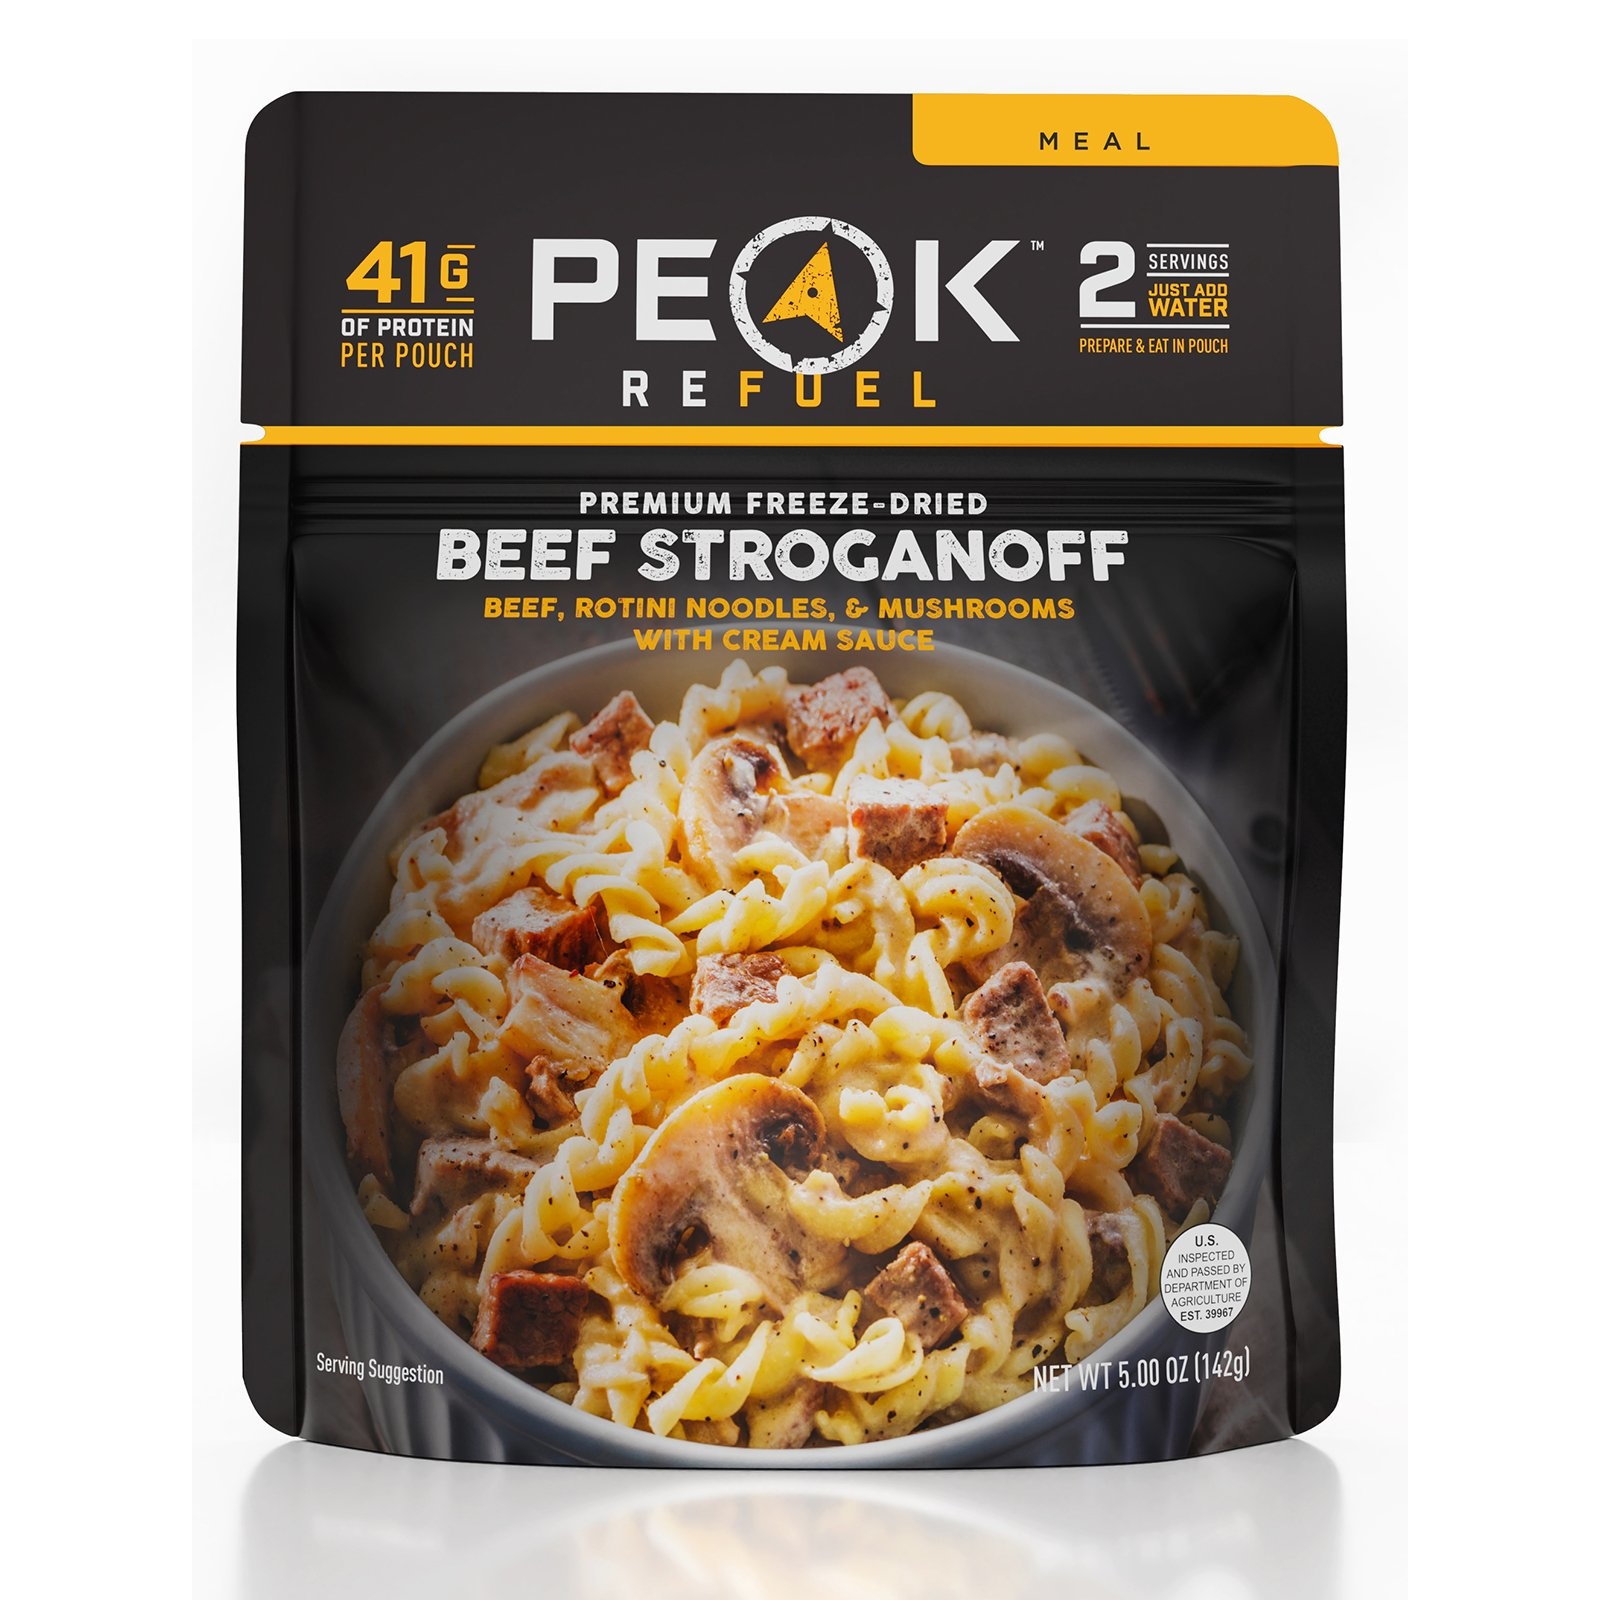 Peak Refuel Beef Stroganoff Meal